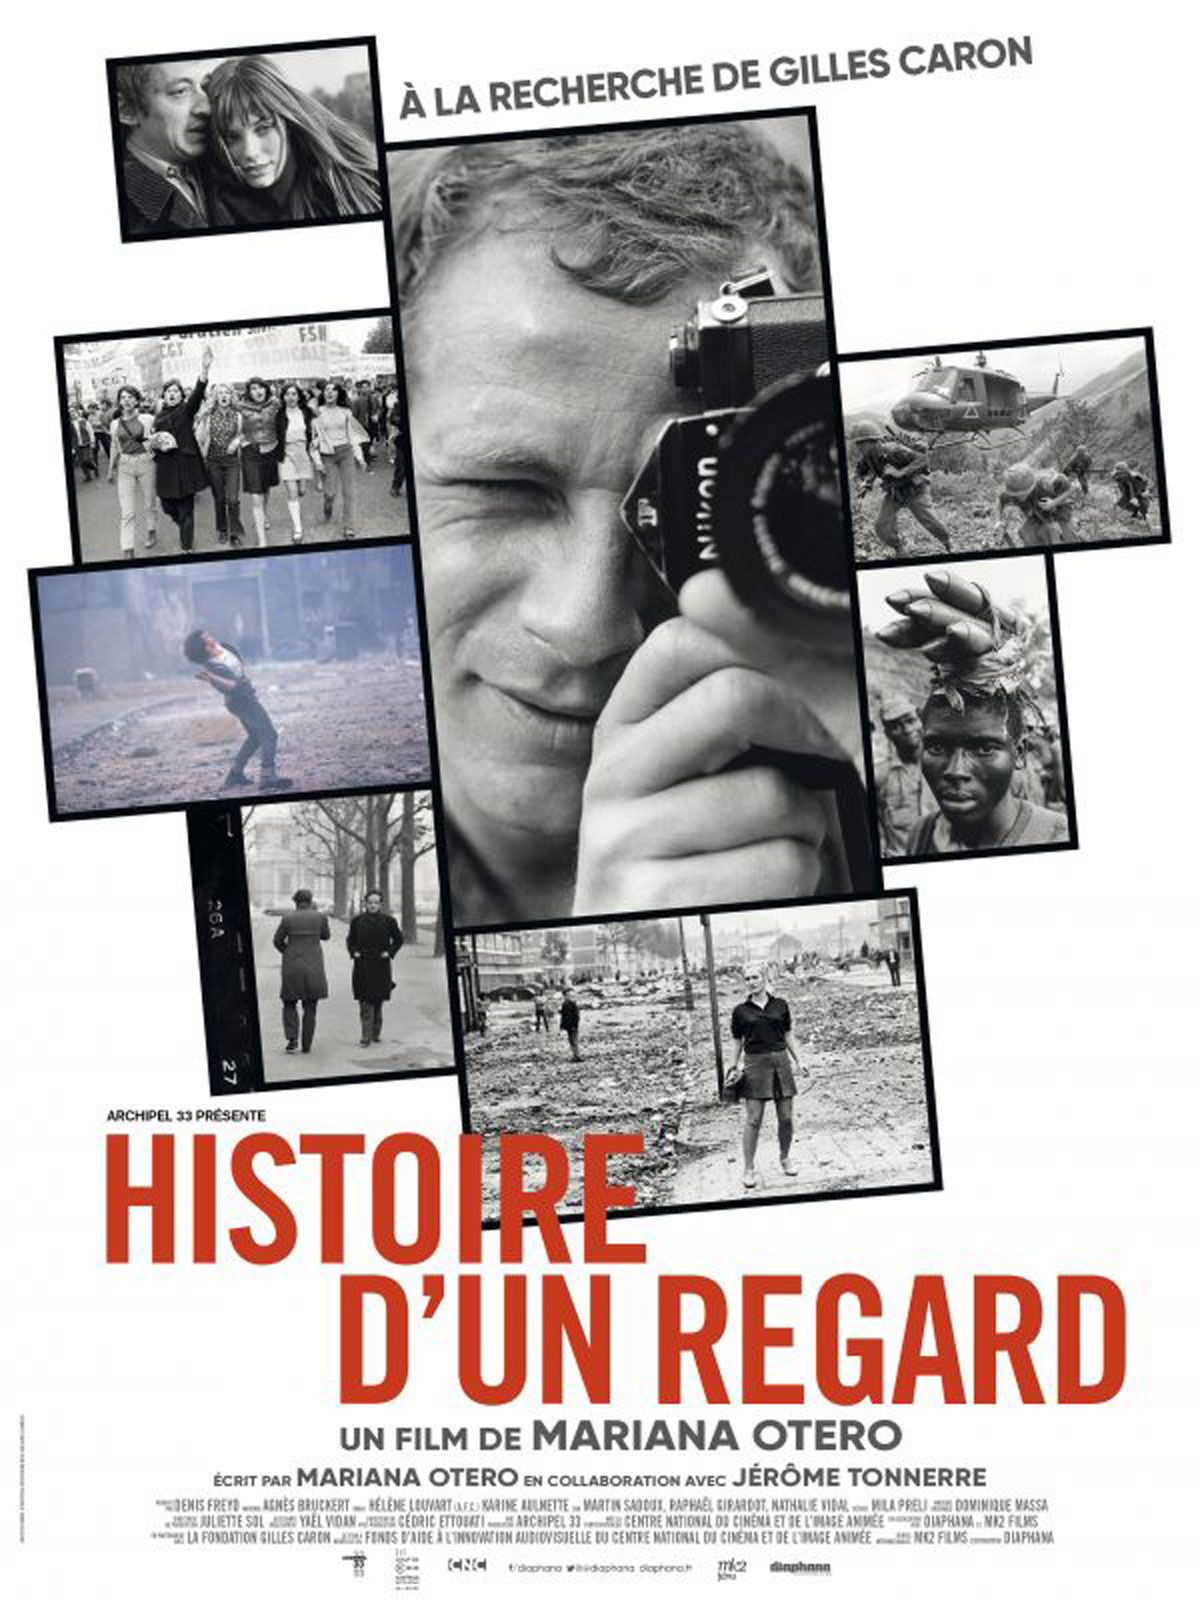 Histoire d'un regard - A la recherche de Gilles Caron - Documentaire (2020) streaming VF gratuit complet